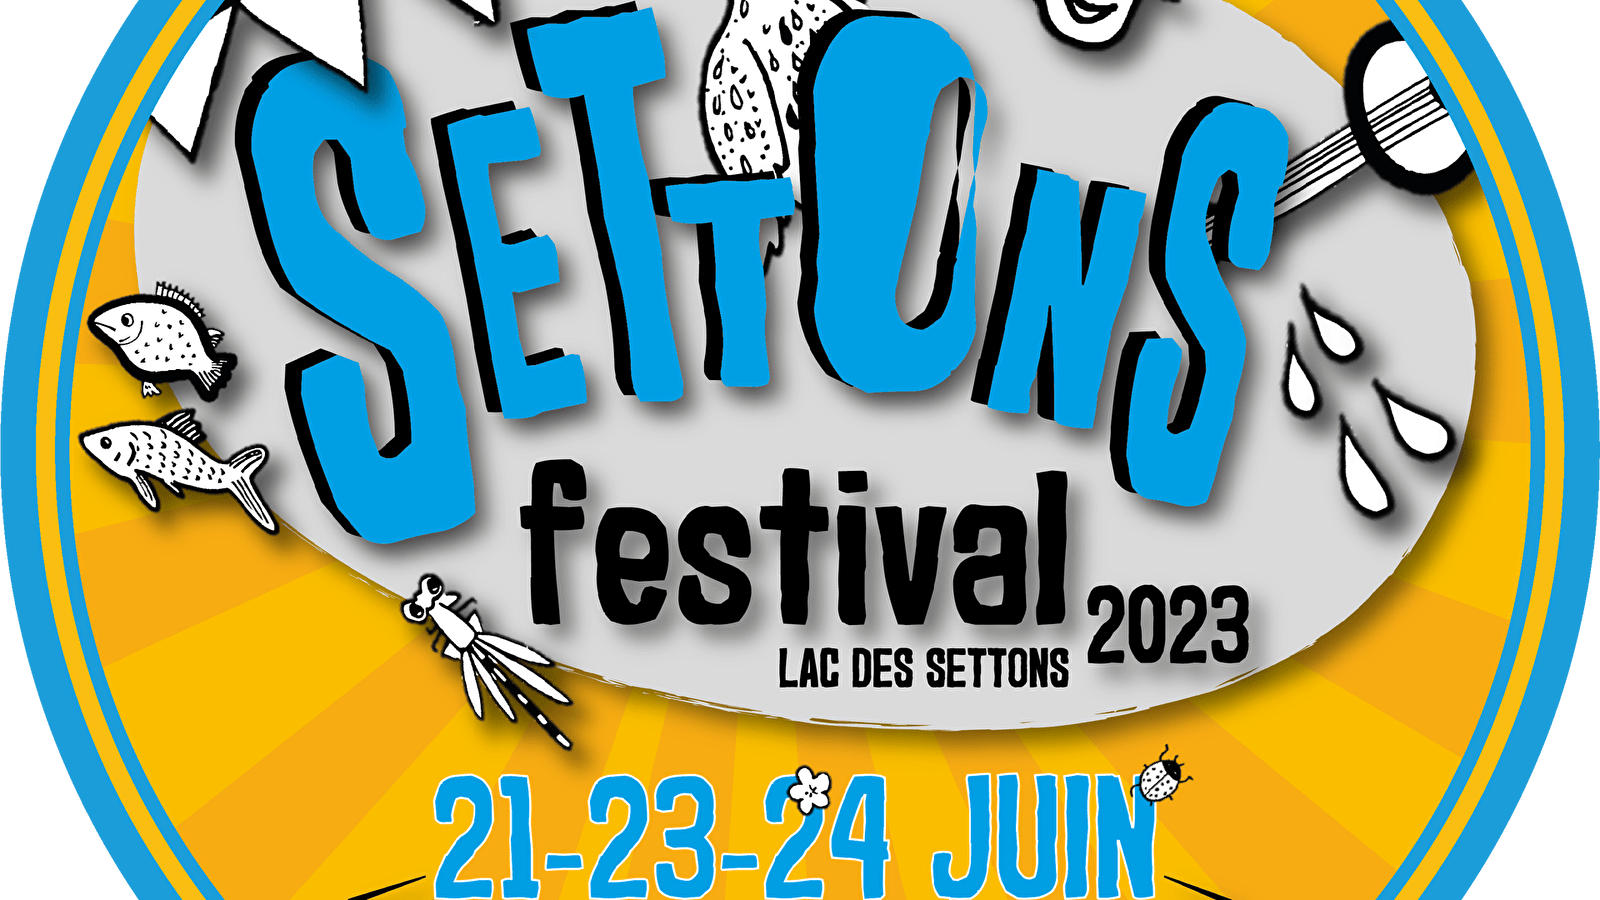 Settons Festival - Festivites du lac